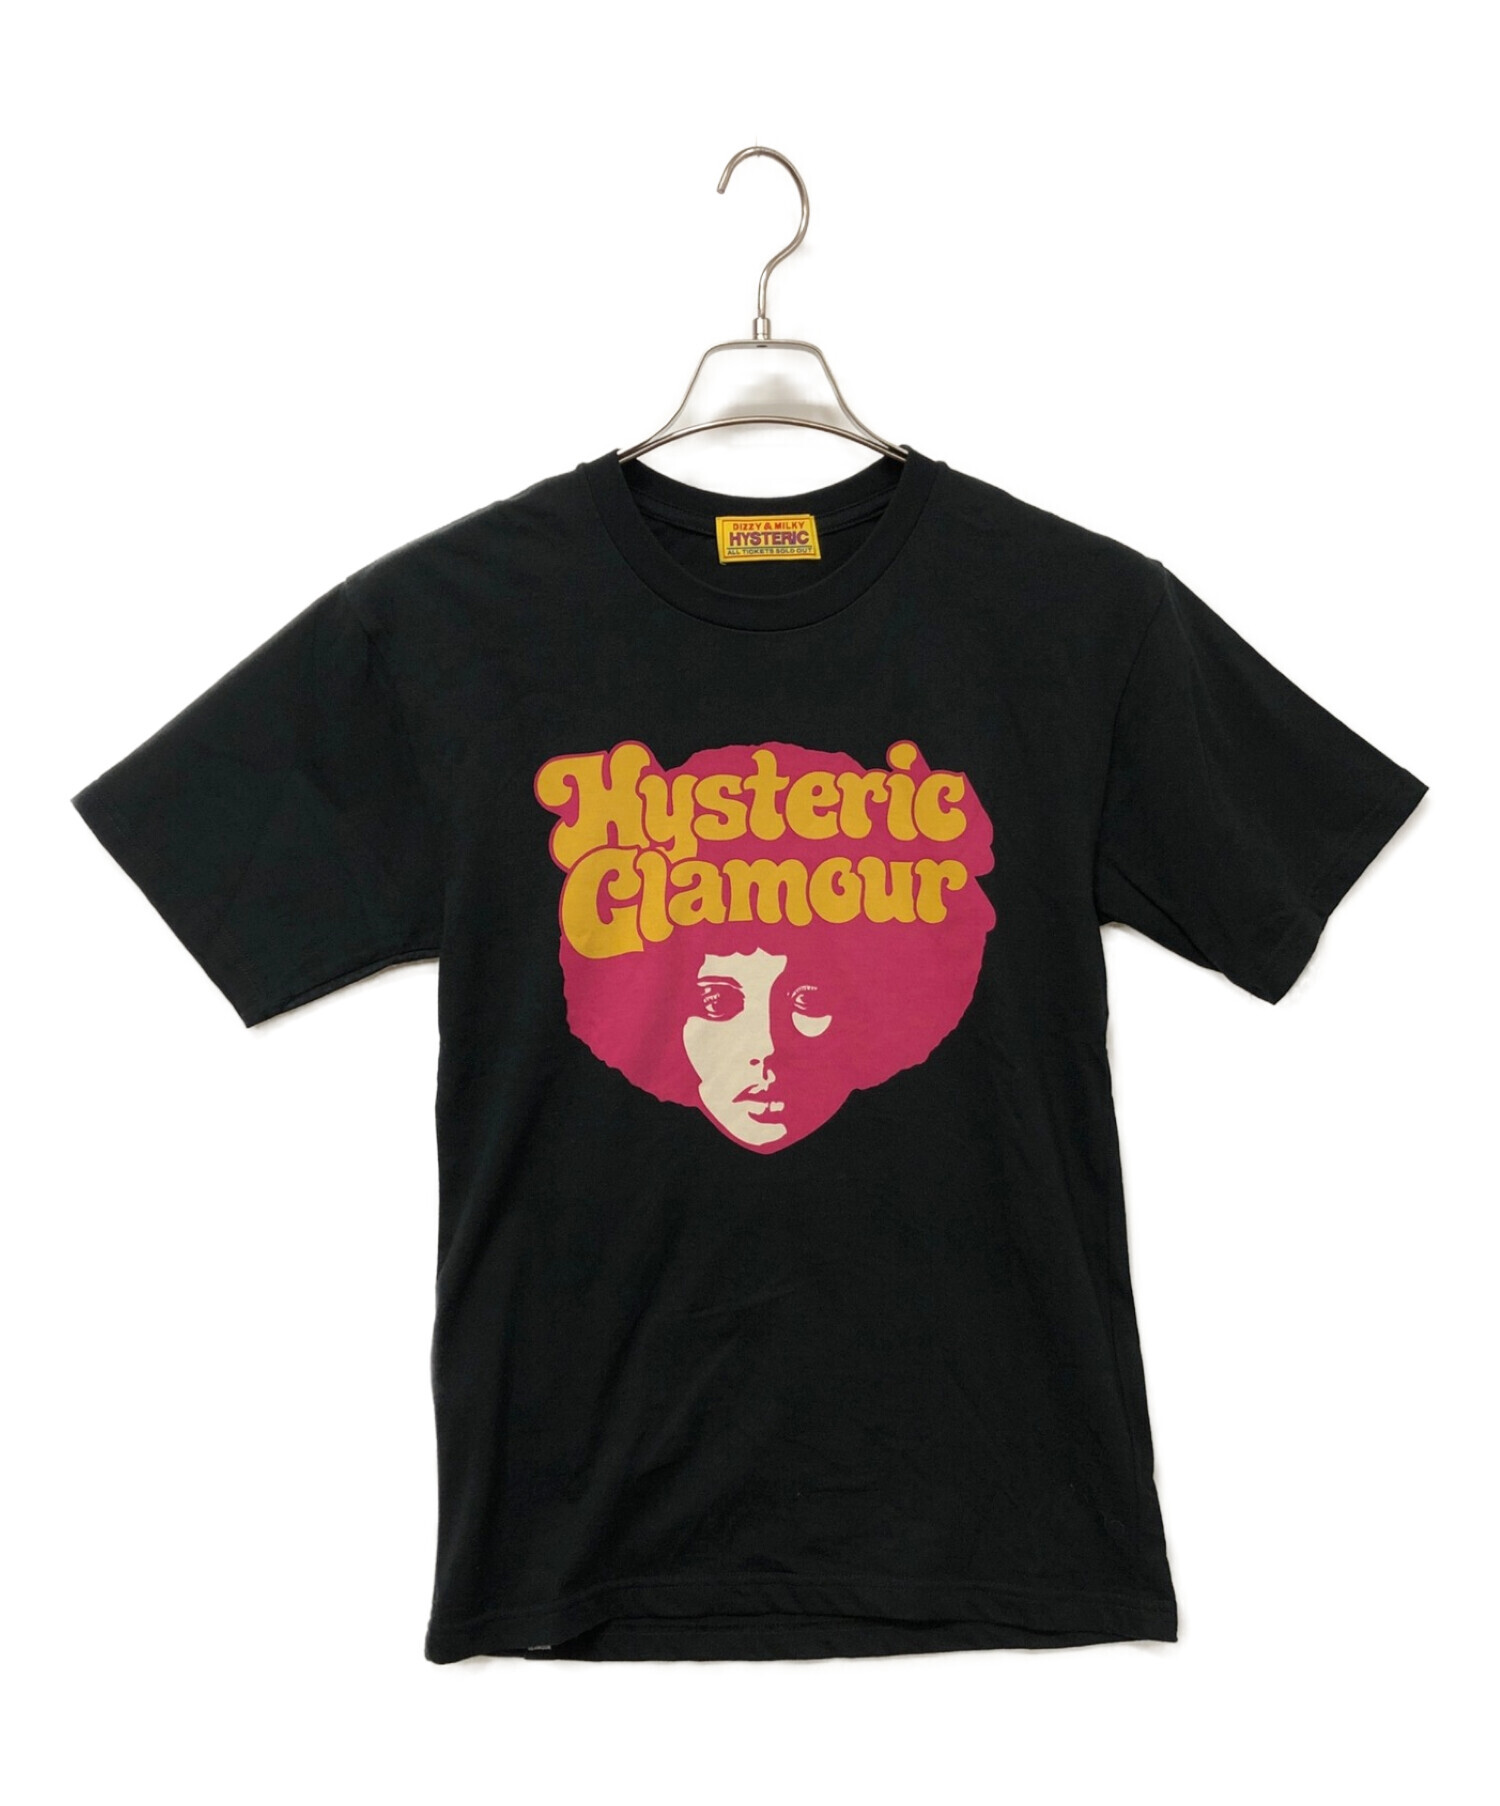 Hysteric Glamour (ヒステリックグラマー) プリントTシャツ ブラック×ピンク サイズ:Free